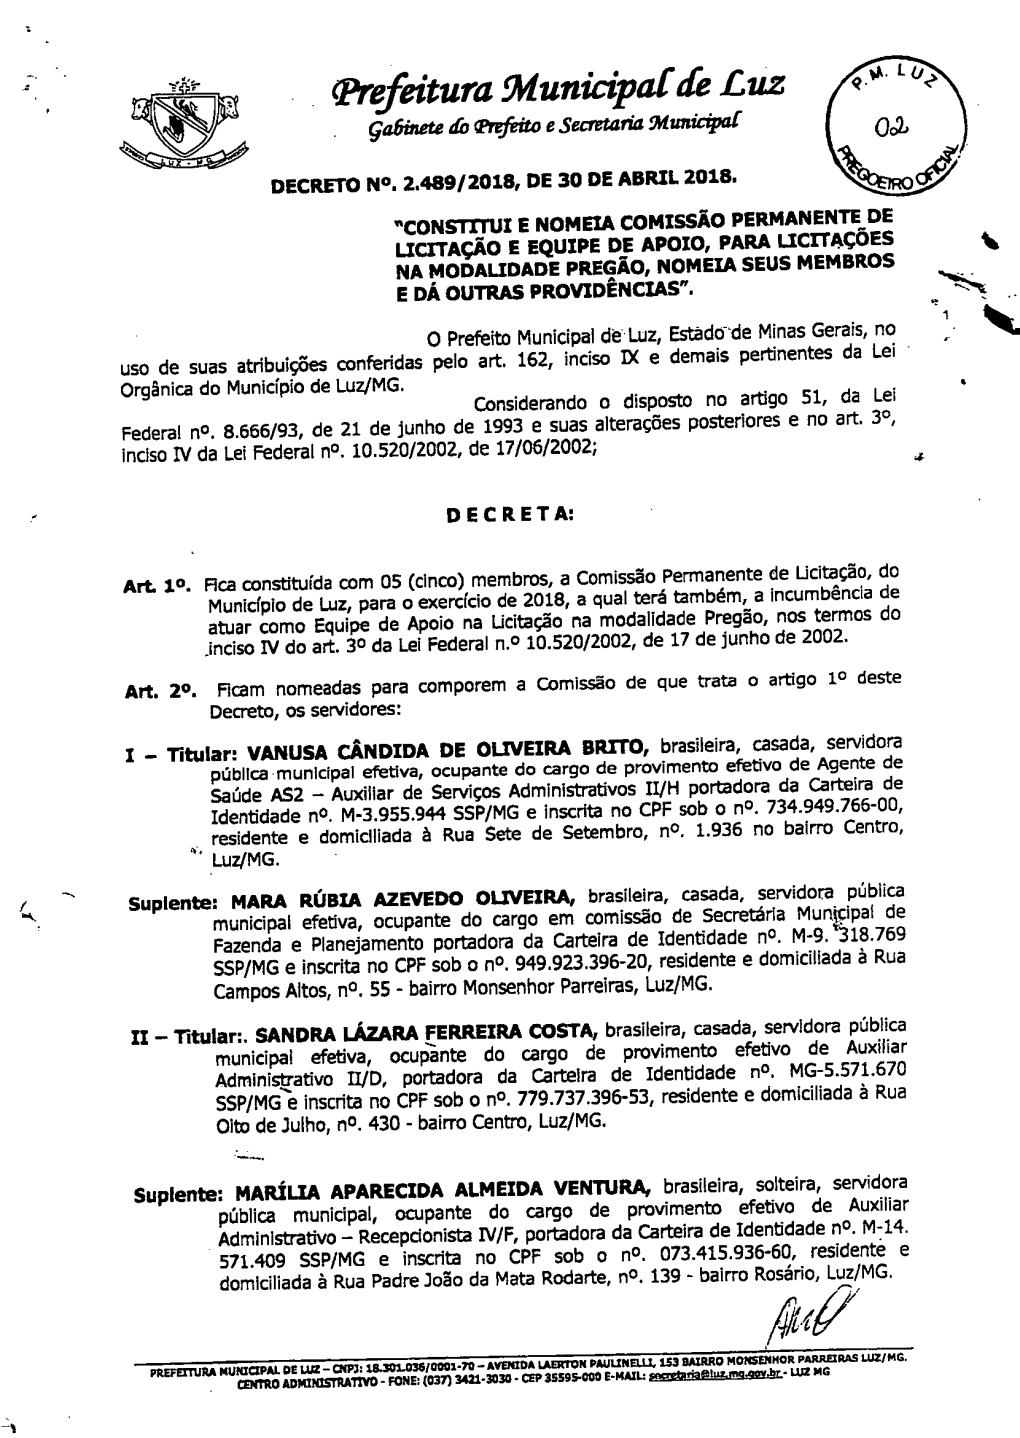 Prefeitura Muniapar De Luz Gabinete Do Trefeito E Secretaria Slunicipat